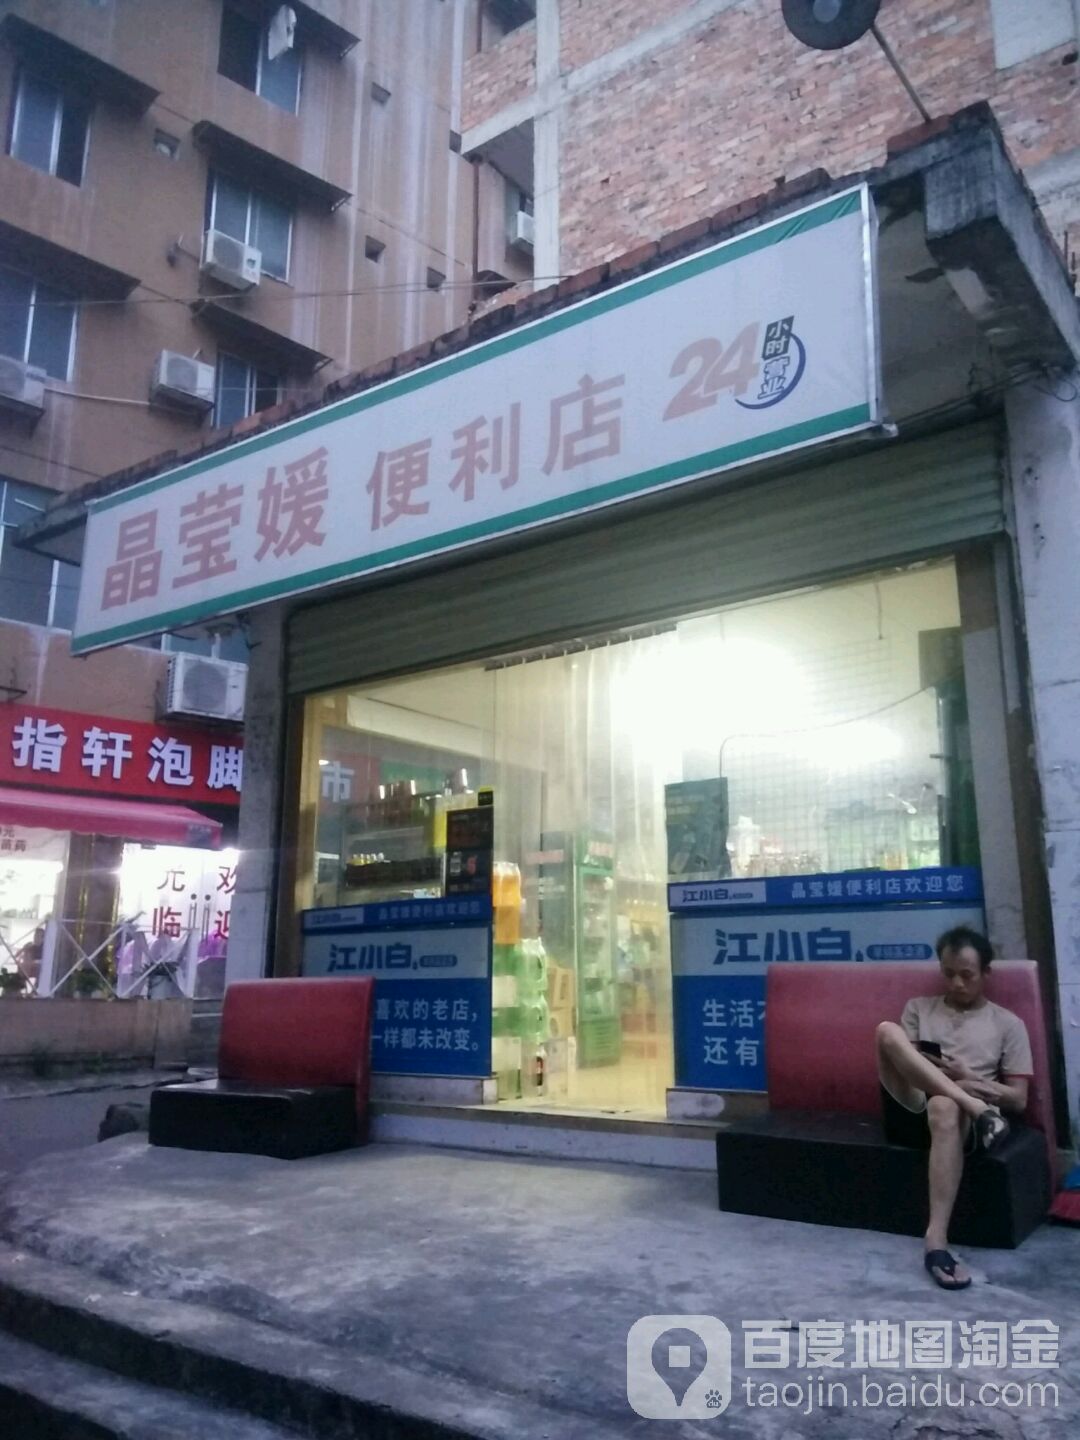 晶瑩媛便利店。